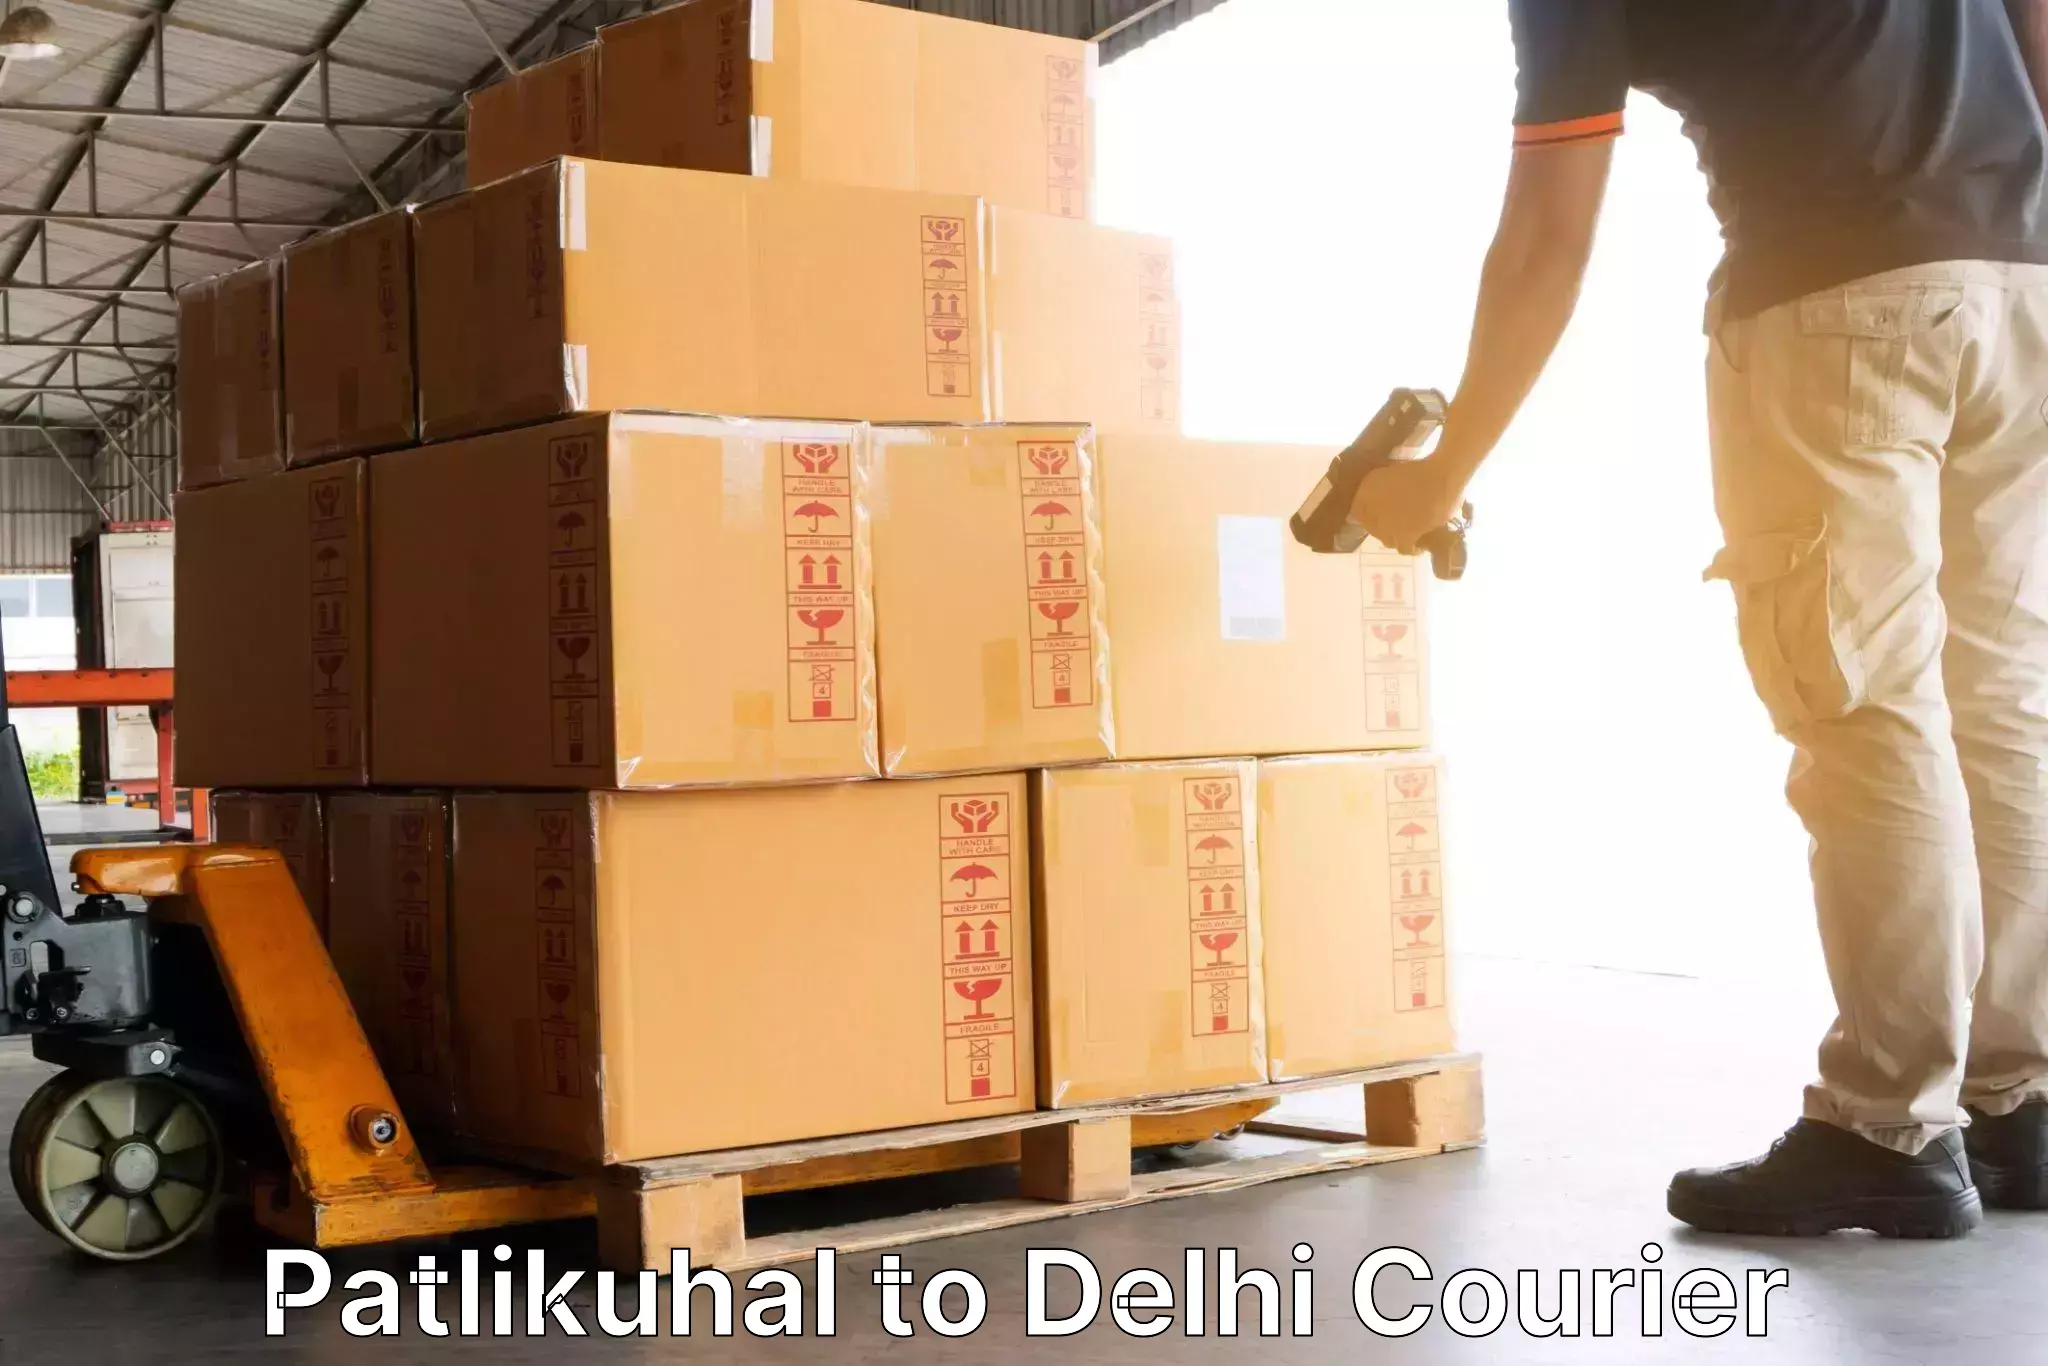 Efficient parcel service Patlikuhal to Krishna Nagar